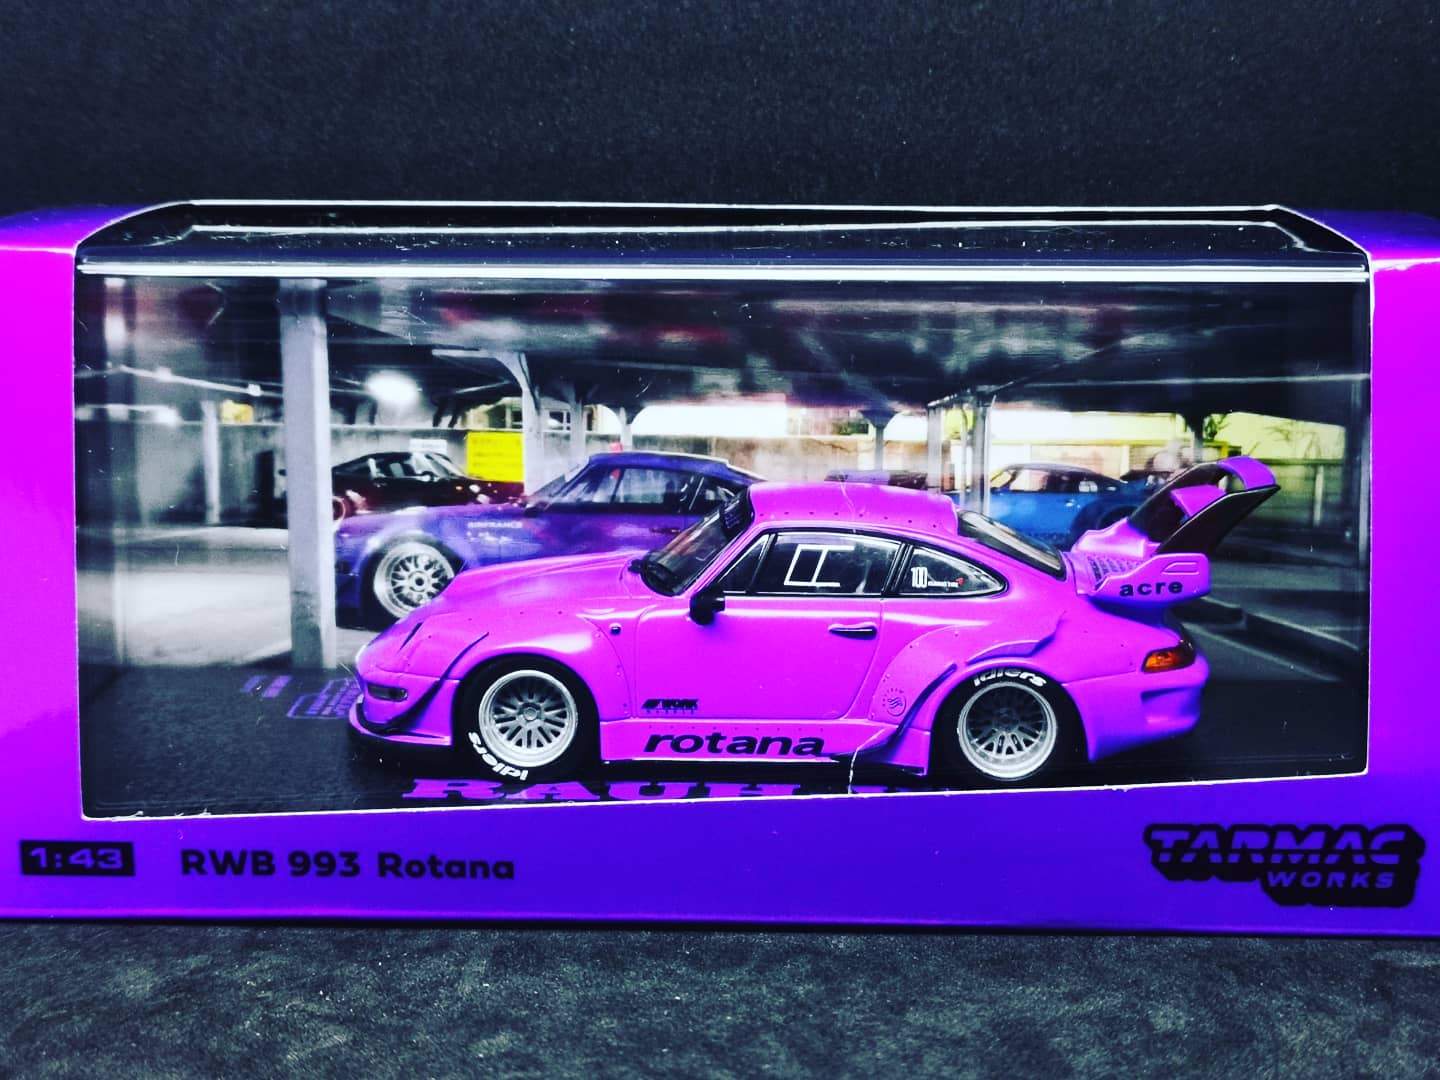 Tarmacworks 1:43 Scale
Porsche 993 RWB Rotana